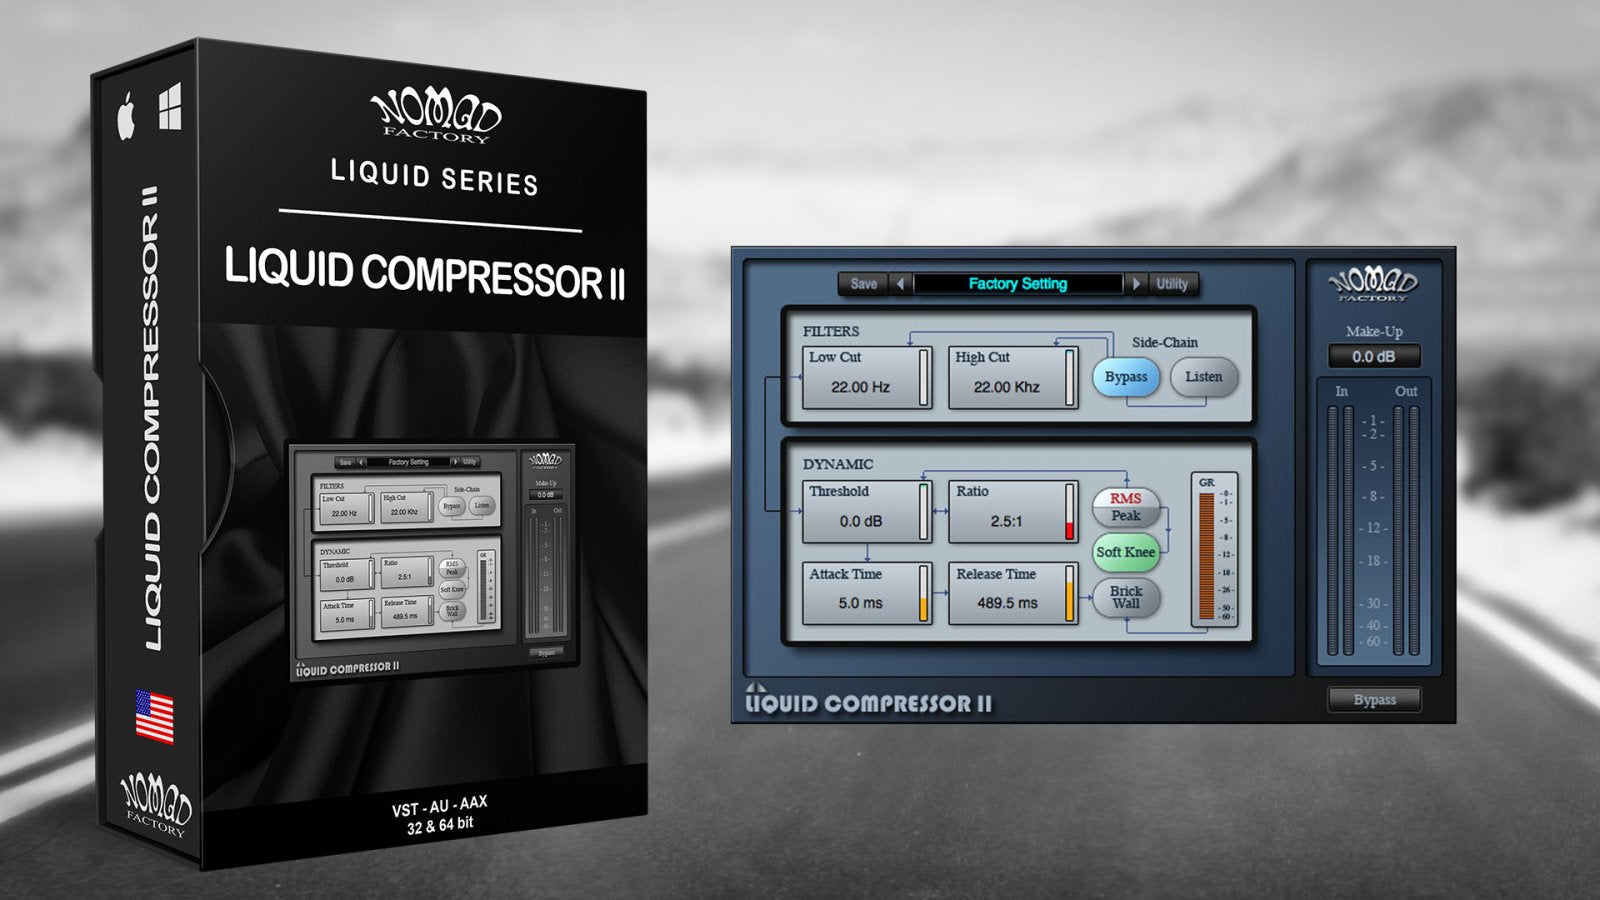 Nomad Factory Liquid Compressor II